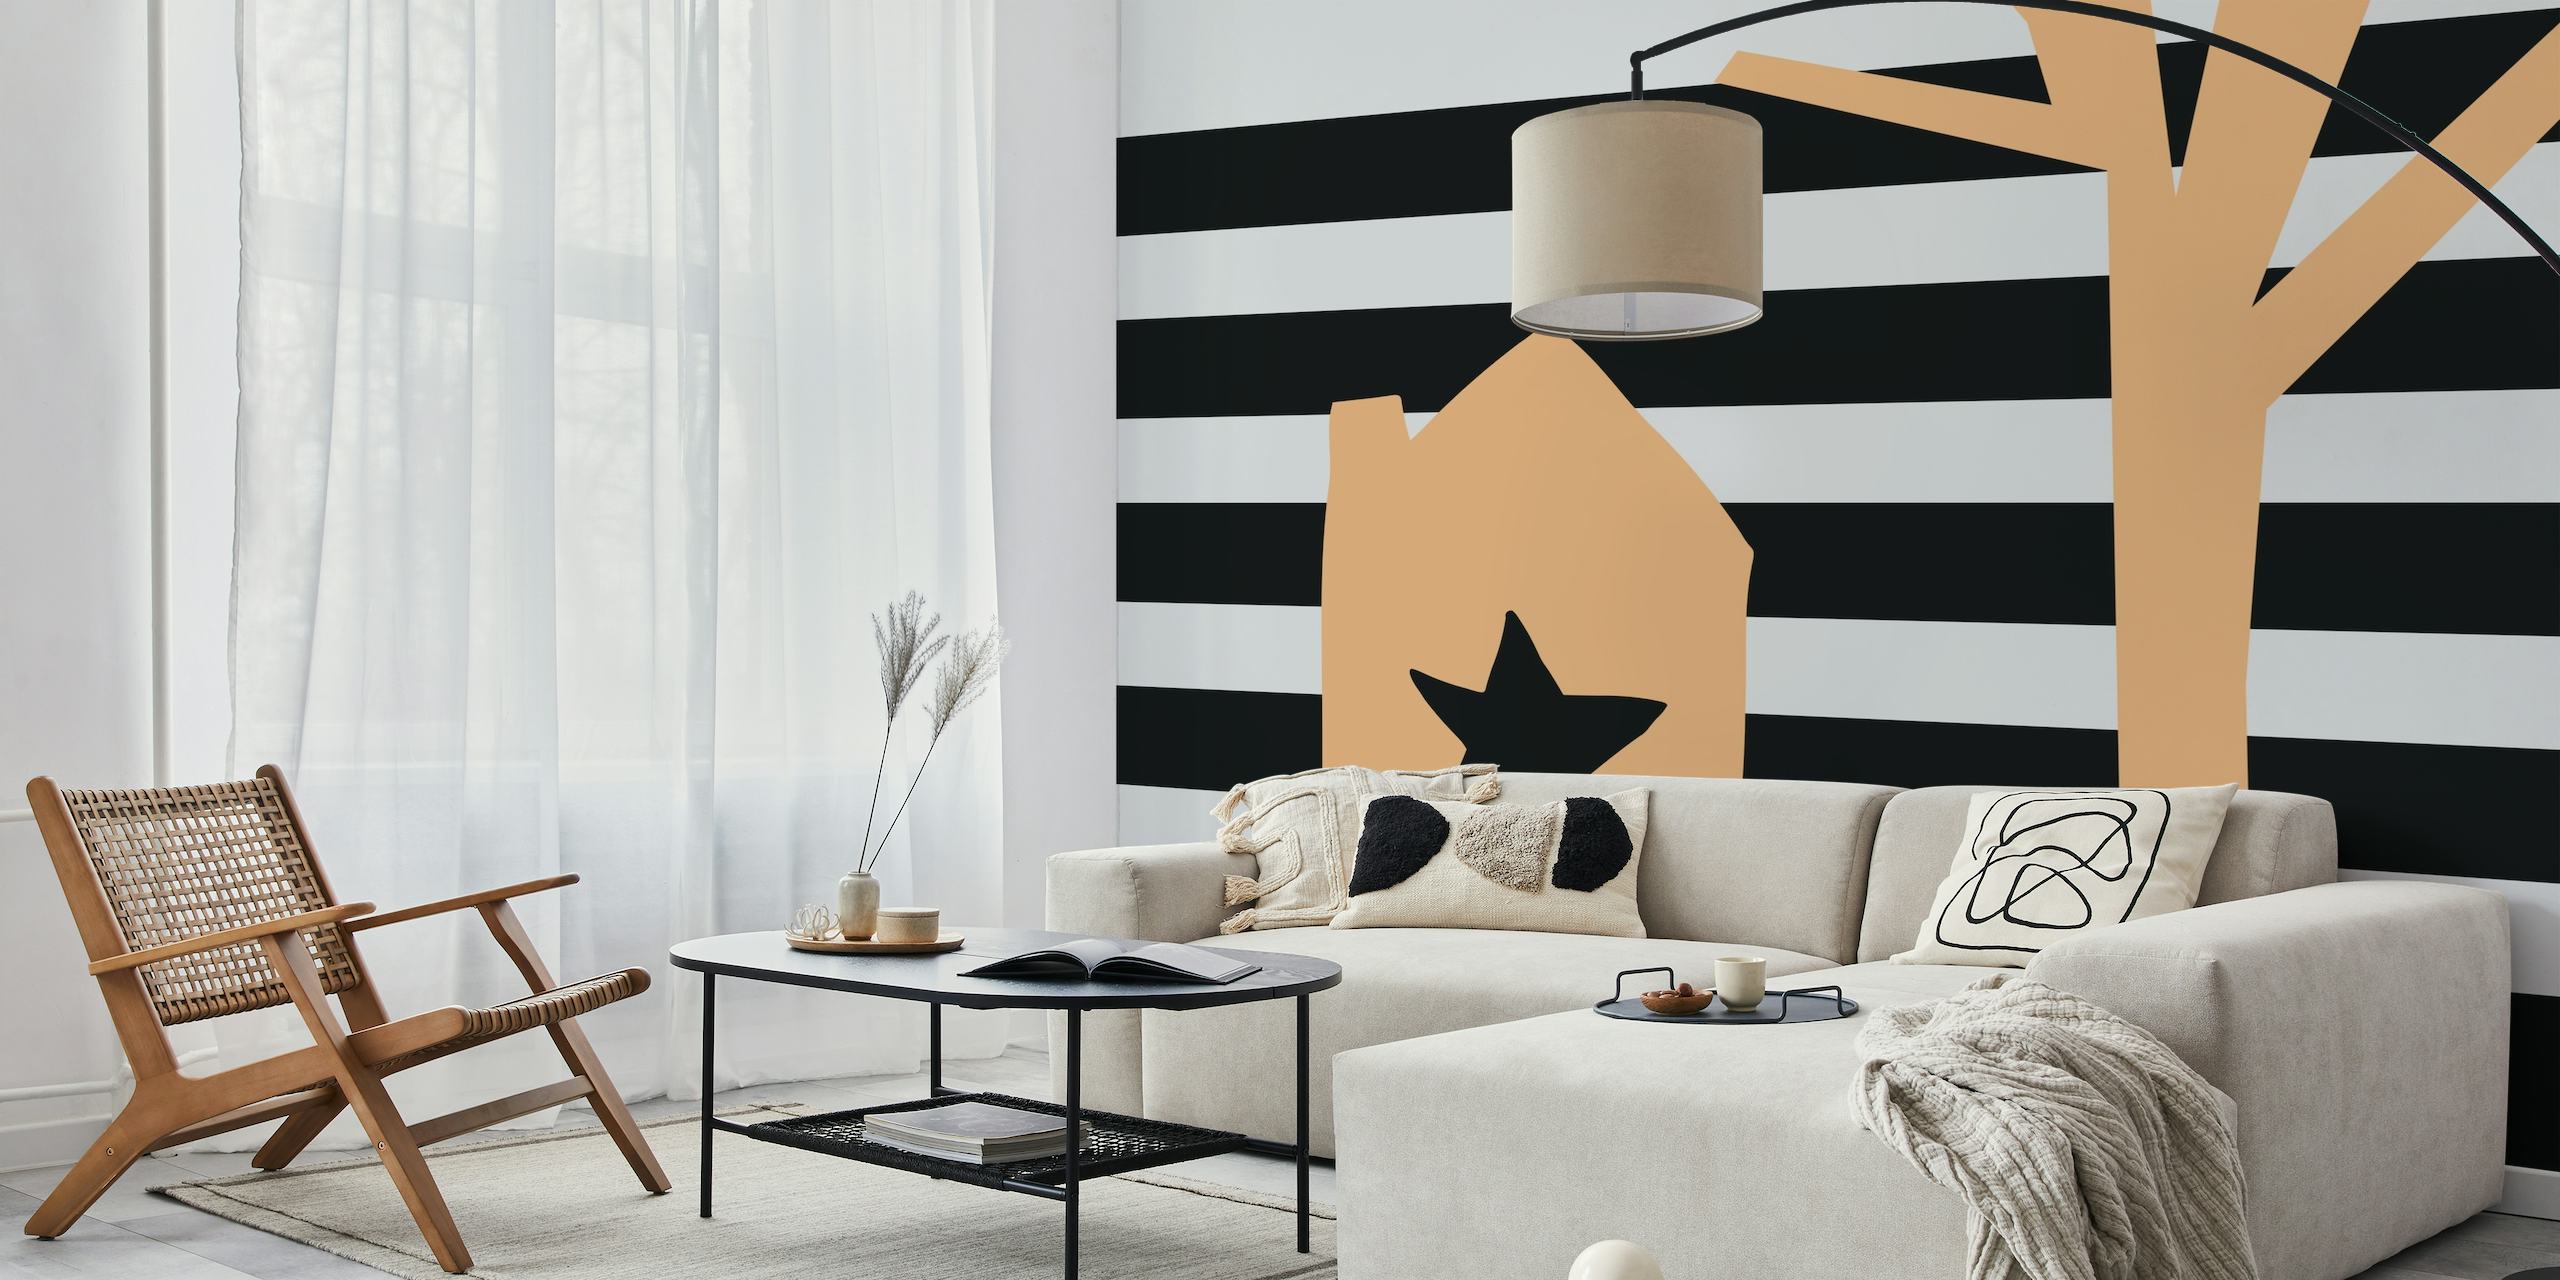 Conception de petite maison minimaliste avec découpe en étoile et arbre abstrait sur fond rayé